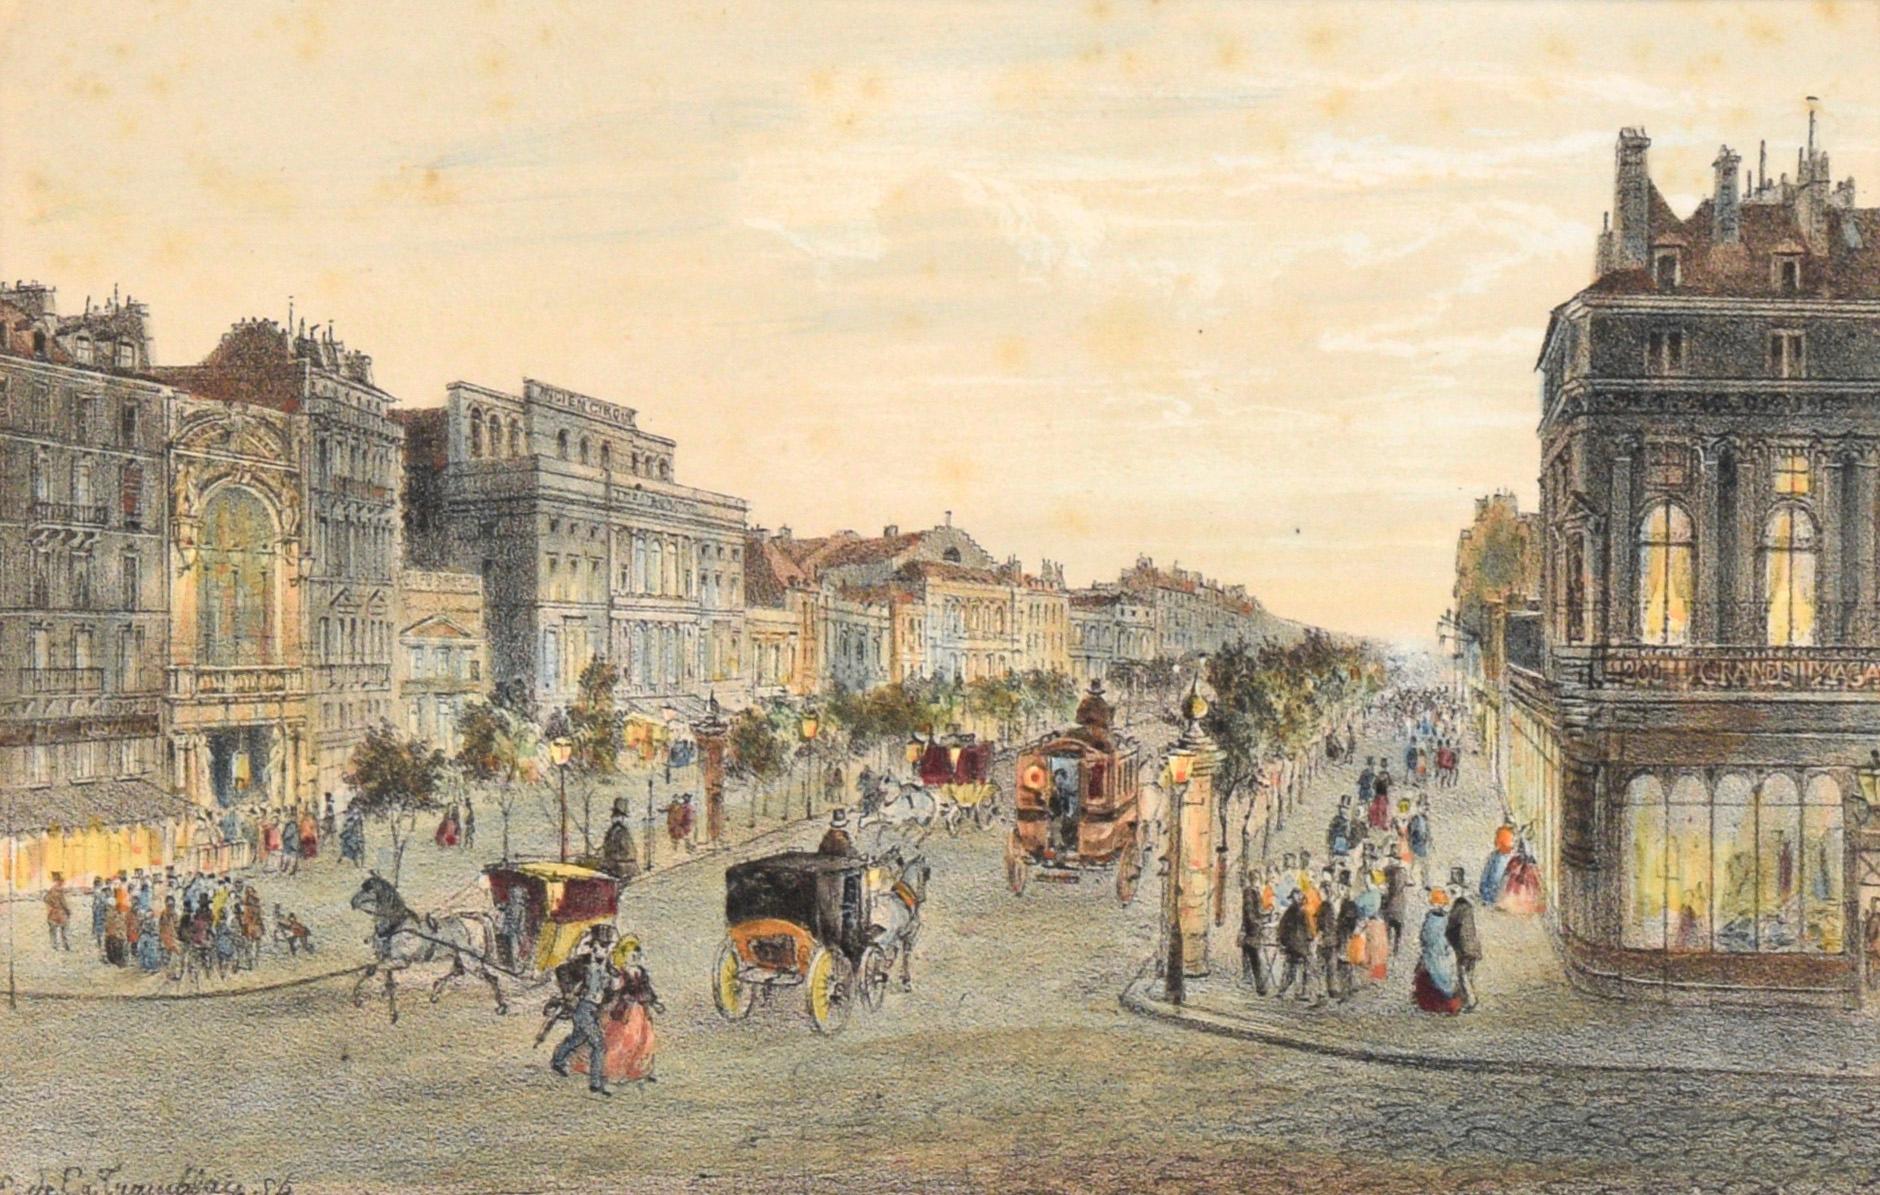 Boulevard du Temple, Paris, France - Lithographie coloriée à la main - Print de Louis Valentin Emile de La Tramblais